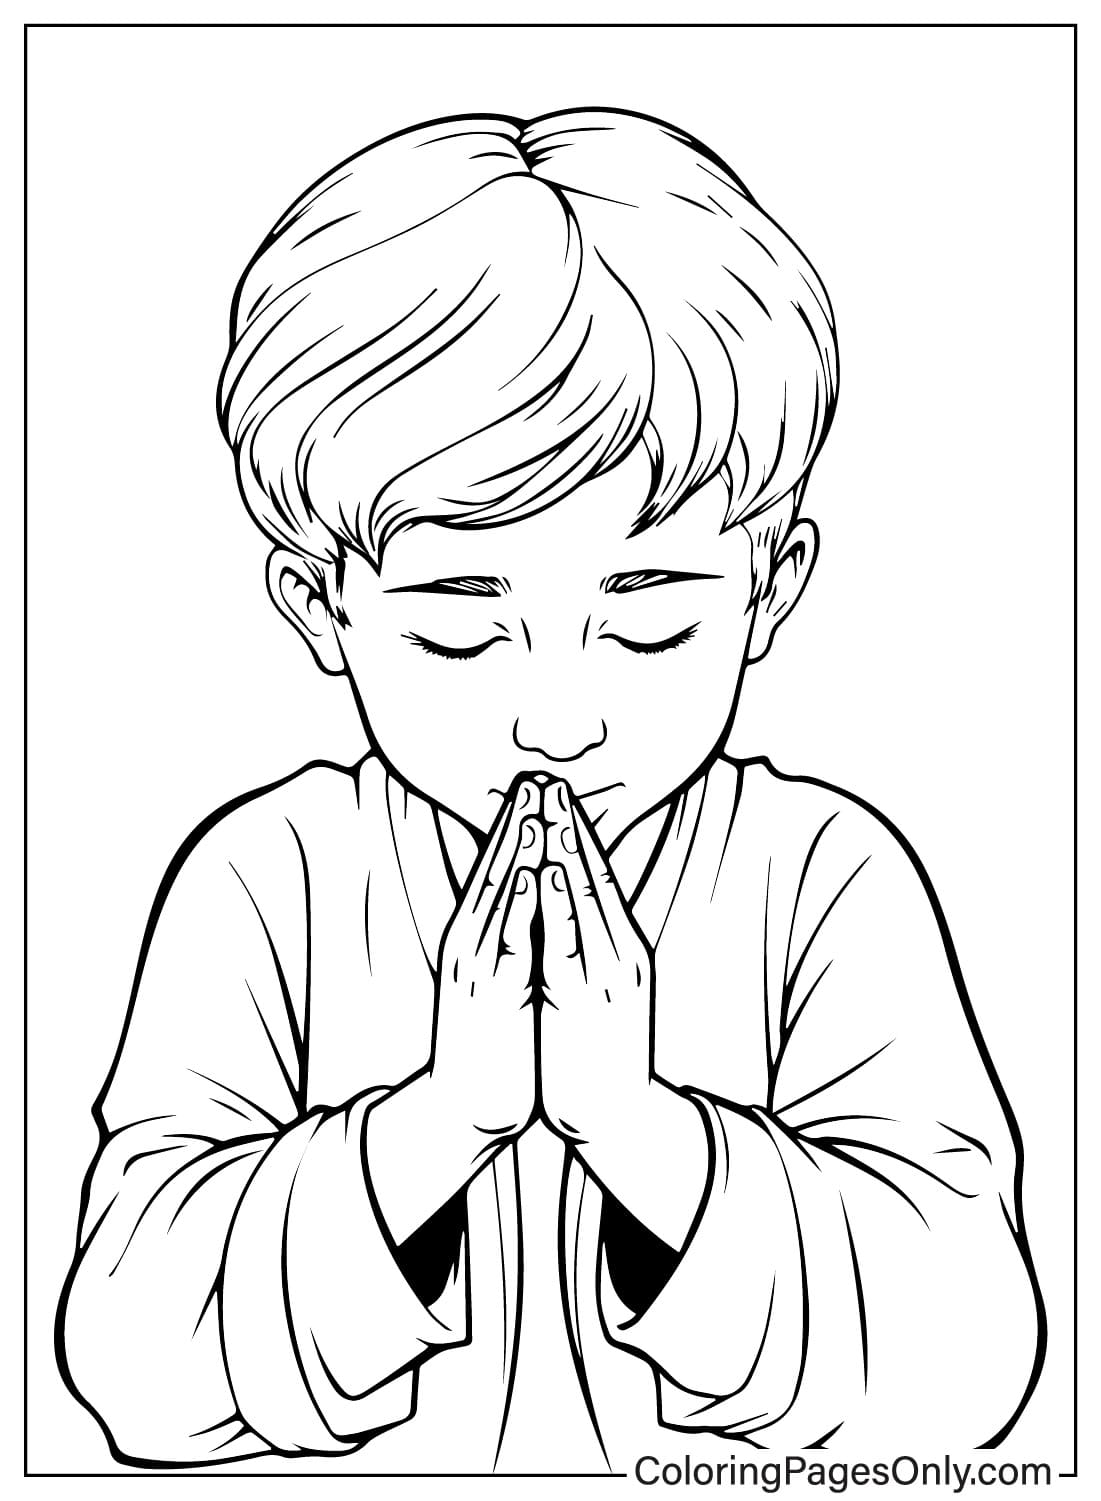 Menino rezando no dia de oração